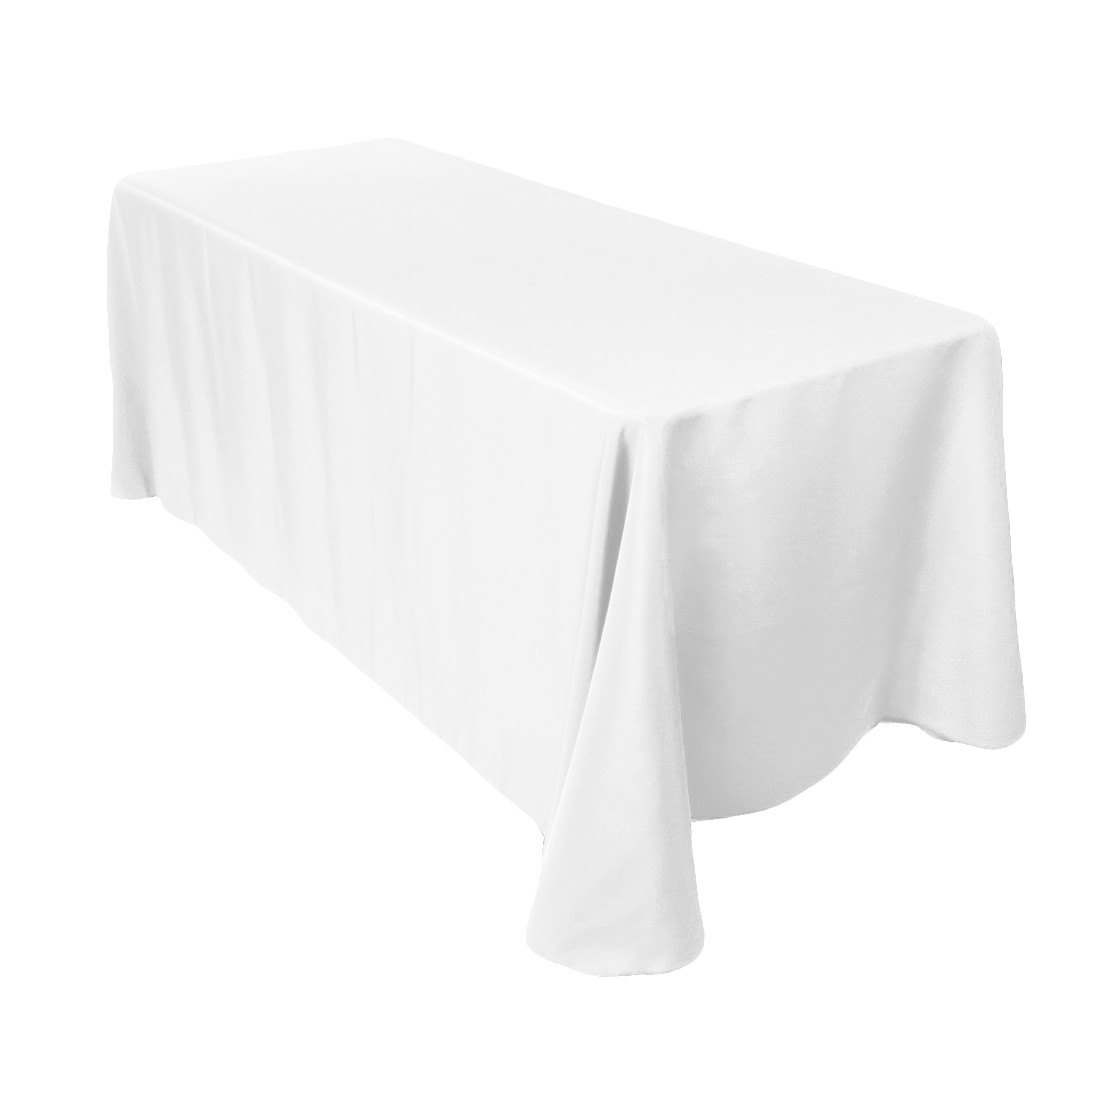 8 ft Polyester White Table Drape